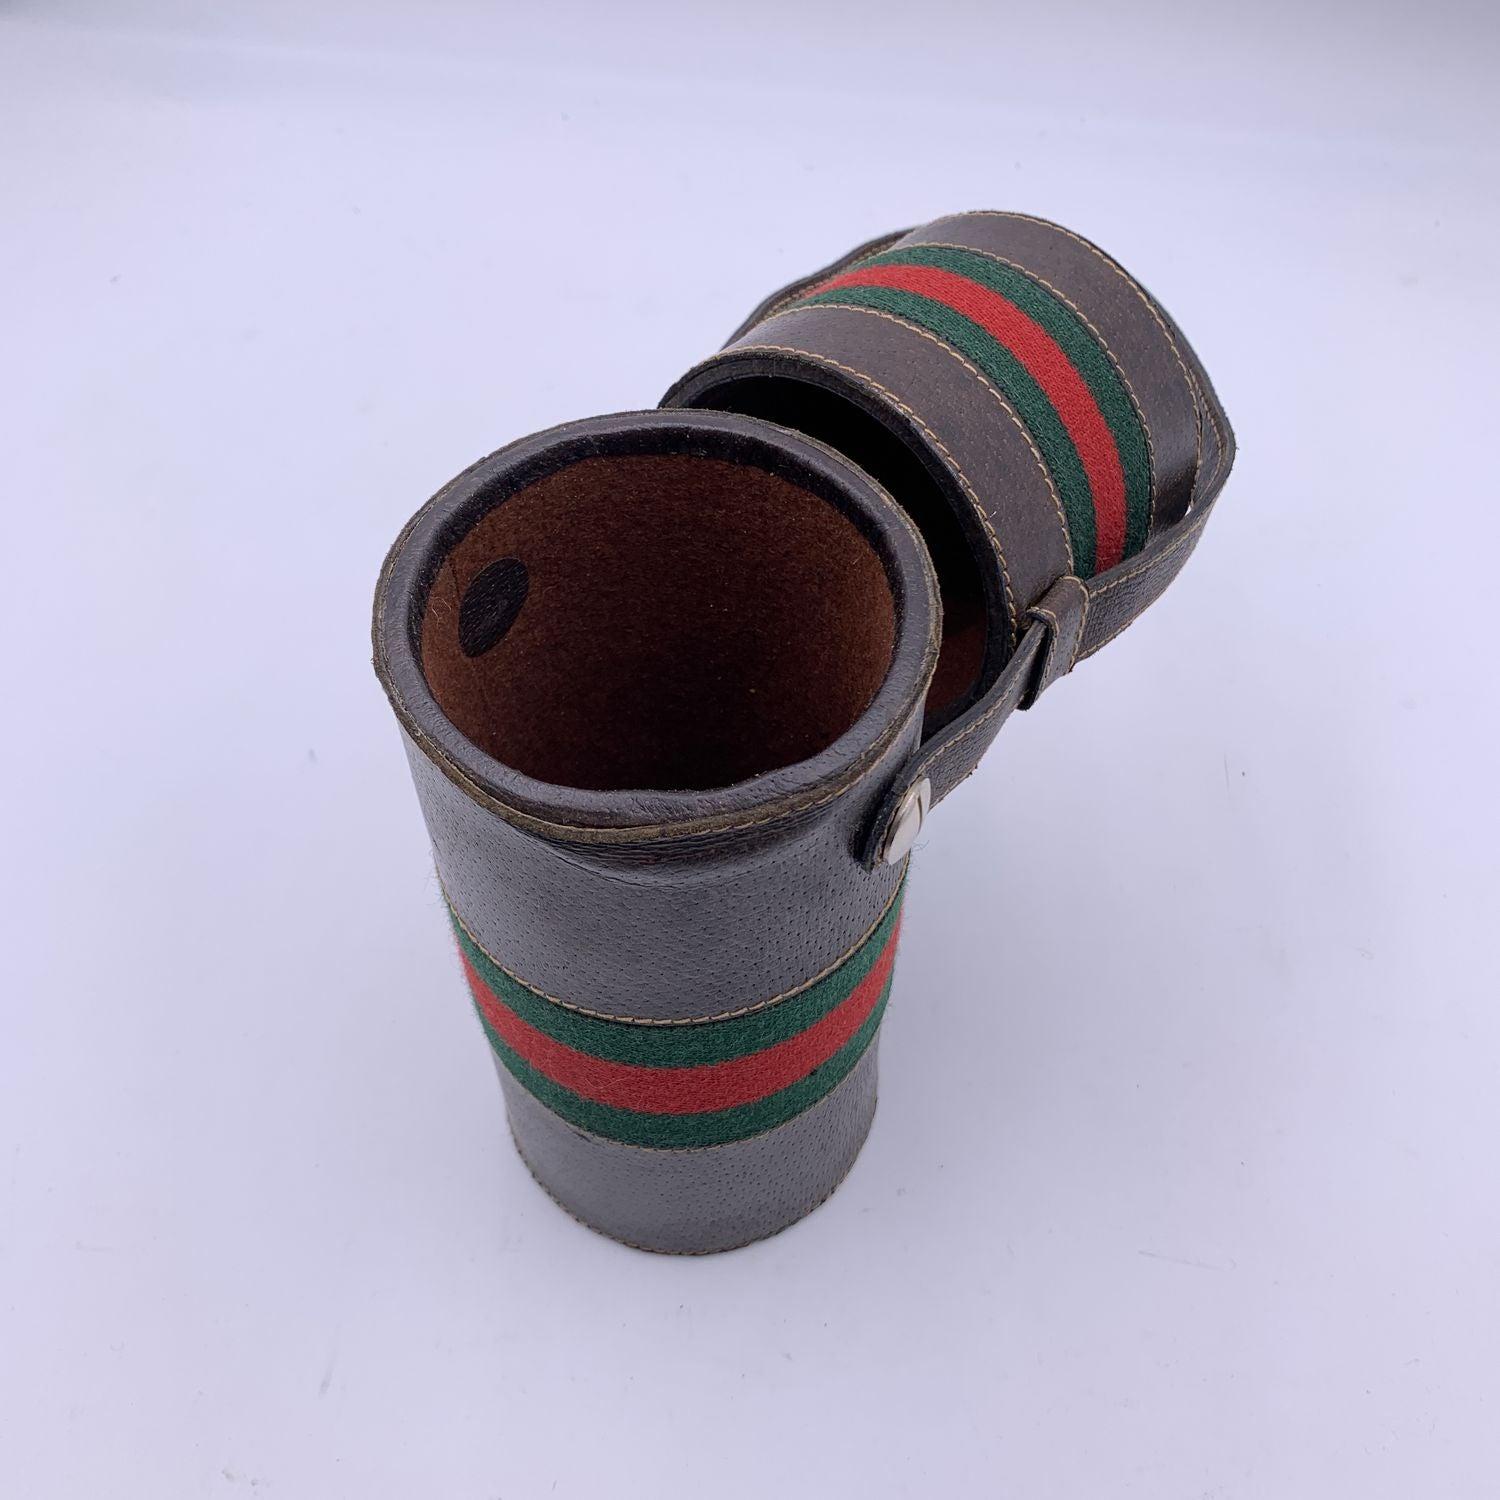 Vintage Thermoskanne/Thermoskannenhalter von GUCCI . Thermoskannenhalter aus braunem Leder mit grün/rot/grünen Streifen rundherum. Der obere Teil des Halters gleitet innerhalb der Umreifung auf und ab. Heben Sie den Deckel an, um eine Thermosflasche